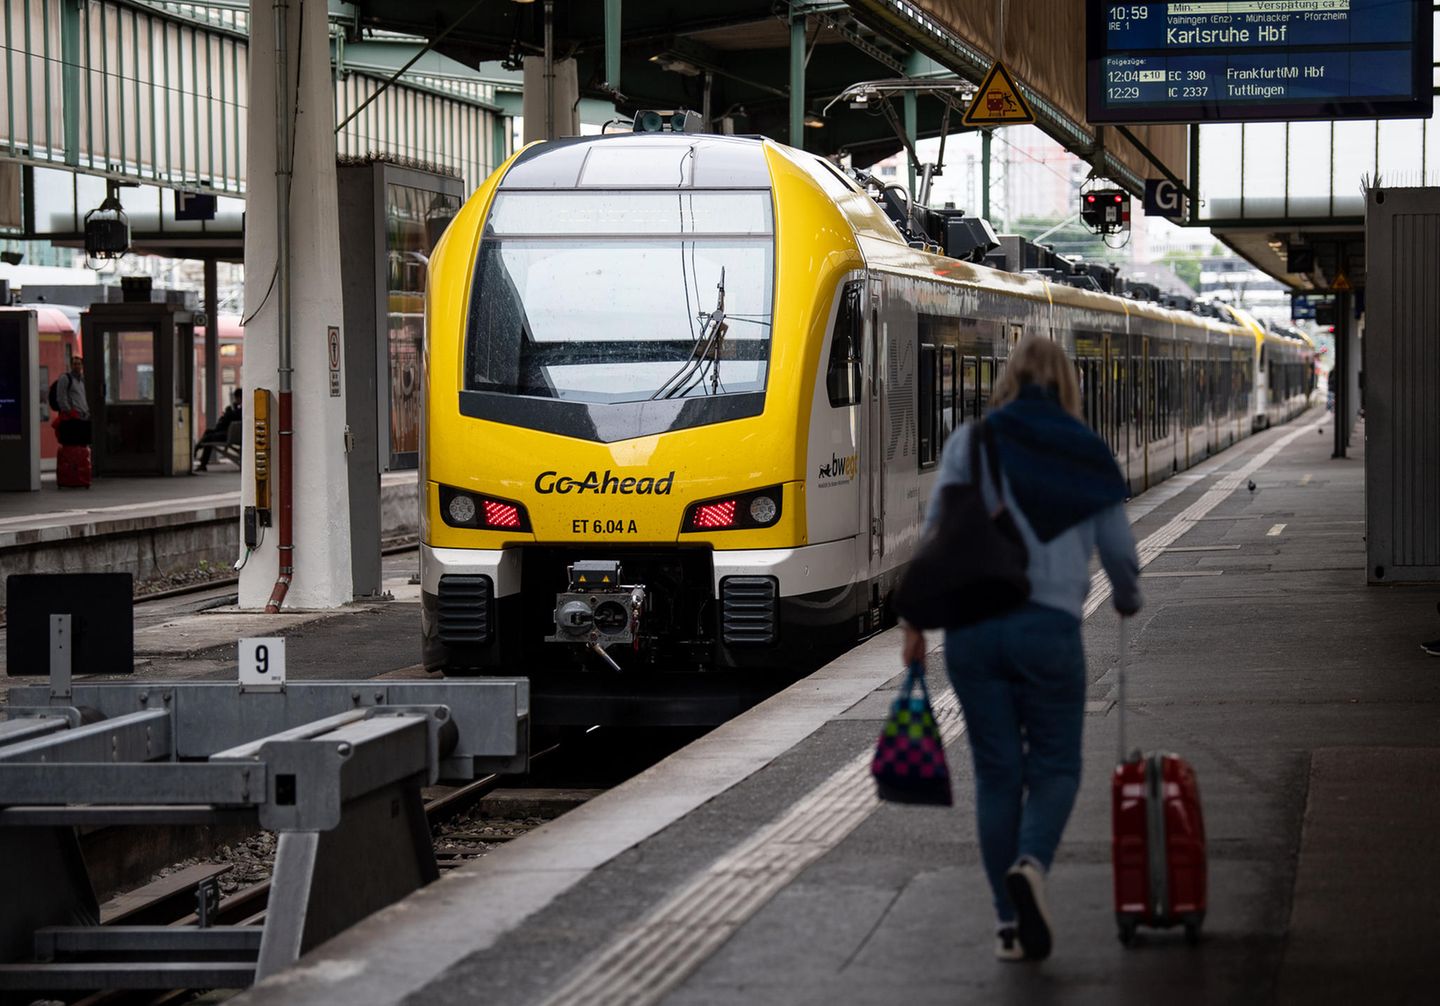 Zug von Geo-Ahead im Stuttgarter Hauptbahnhof: Beim neuen Betreiber der Remsbahn gibt es Probleme und Verspätungen